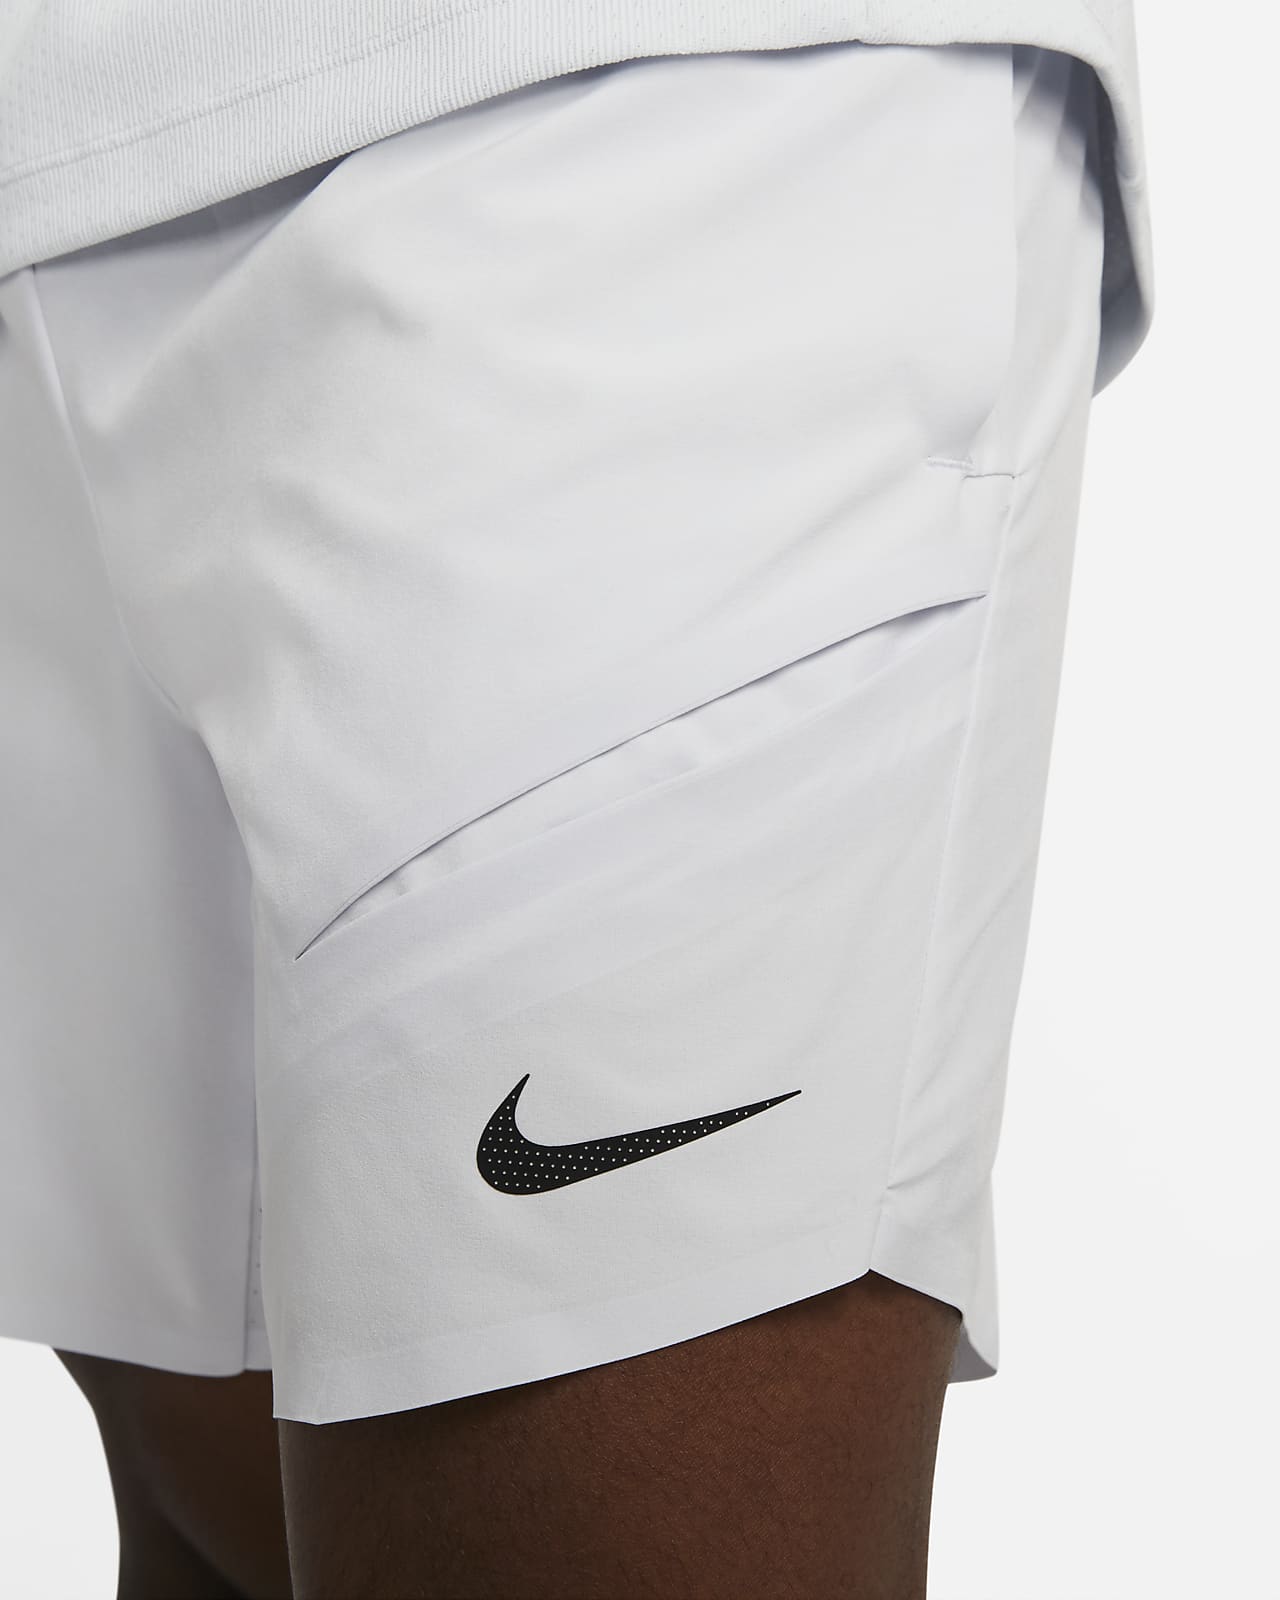 NikeCourt Dri-FIT ADV Men's Tennis Nike.com